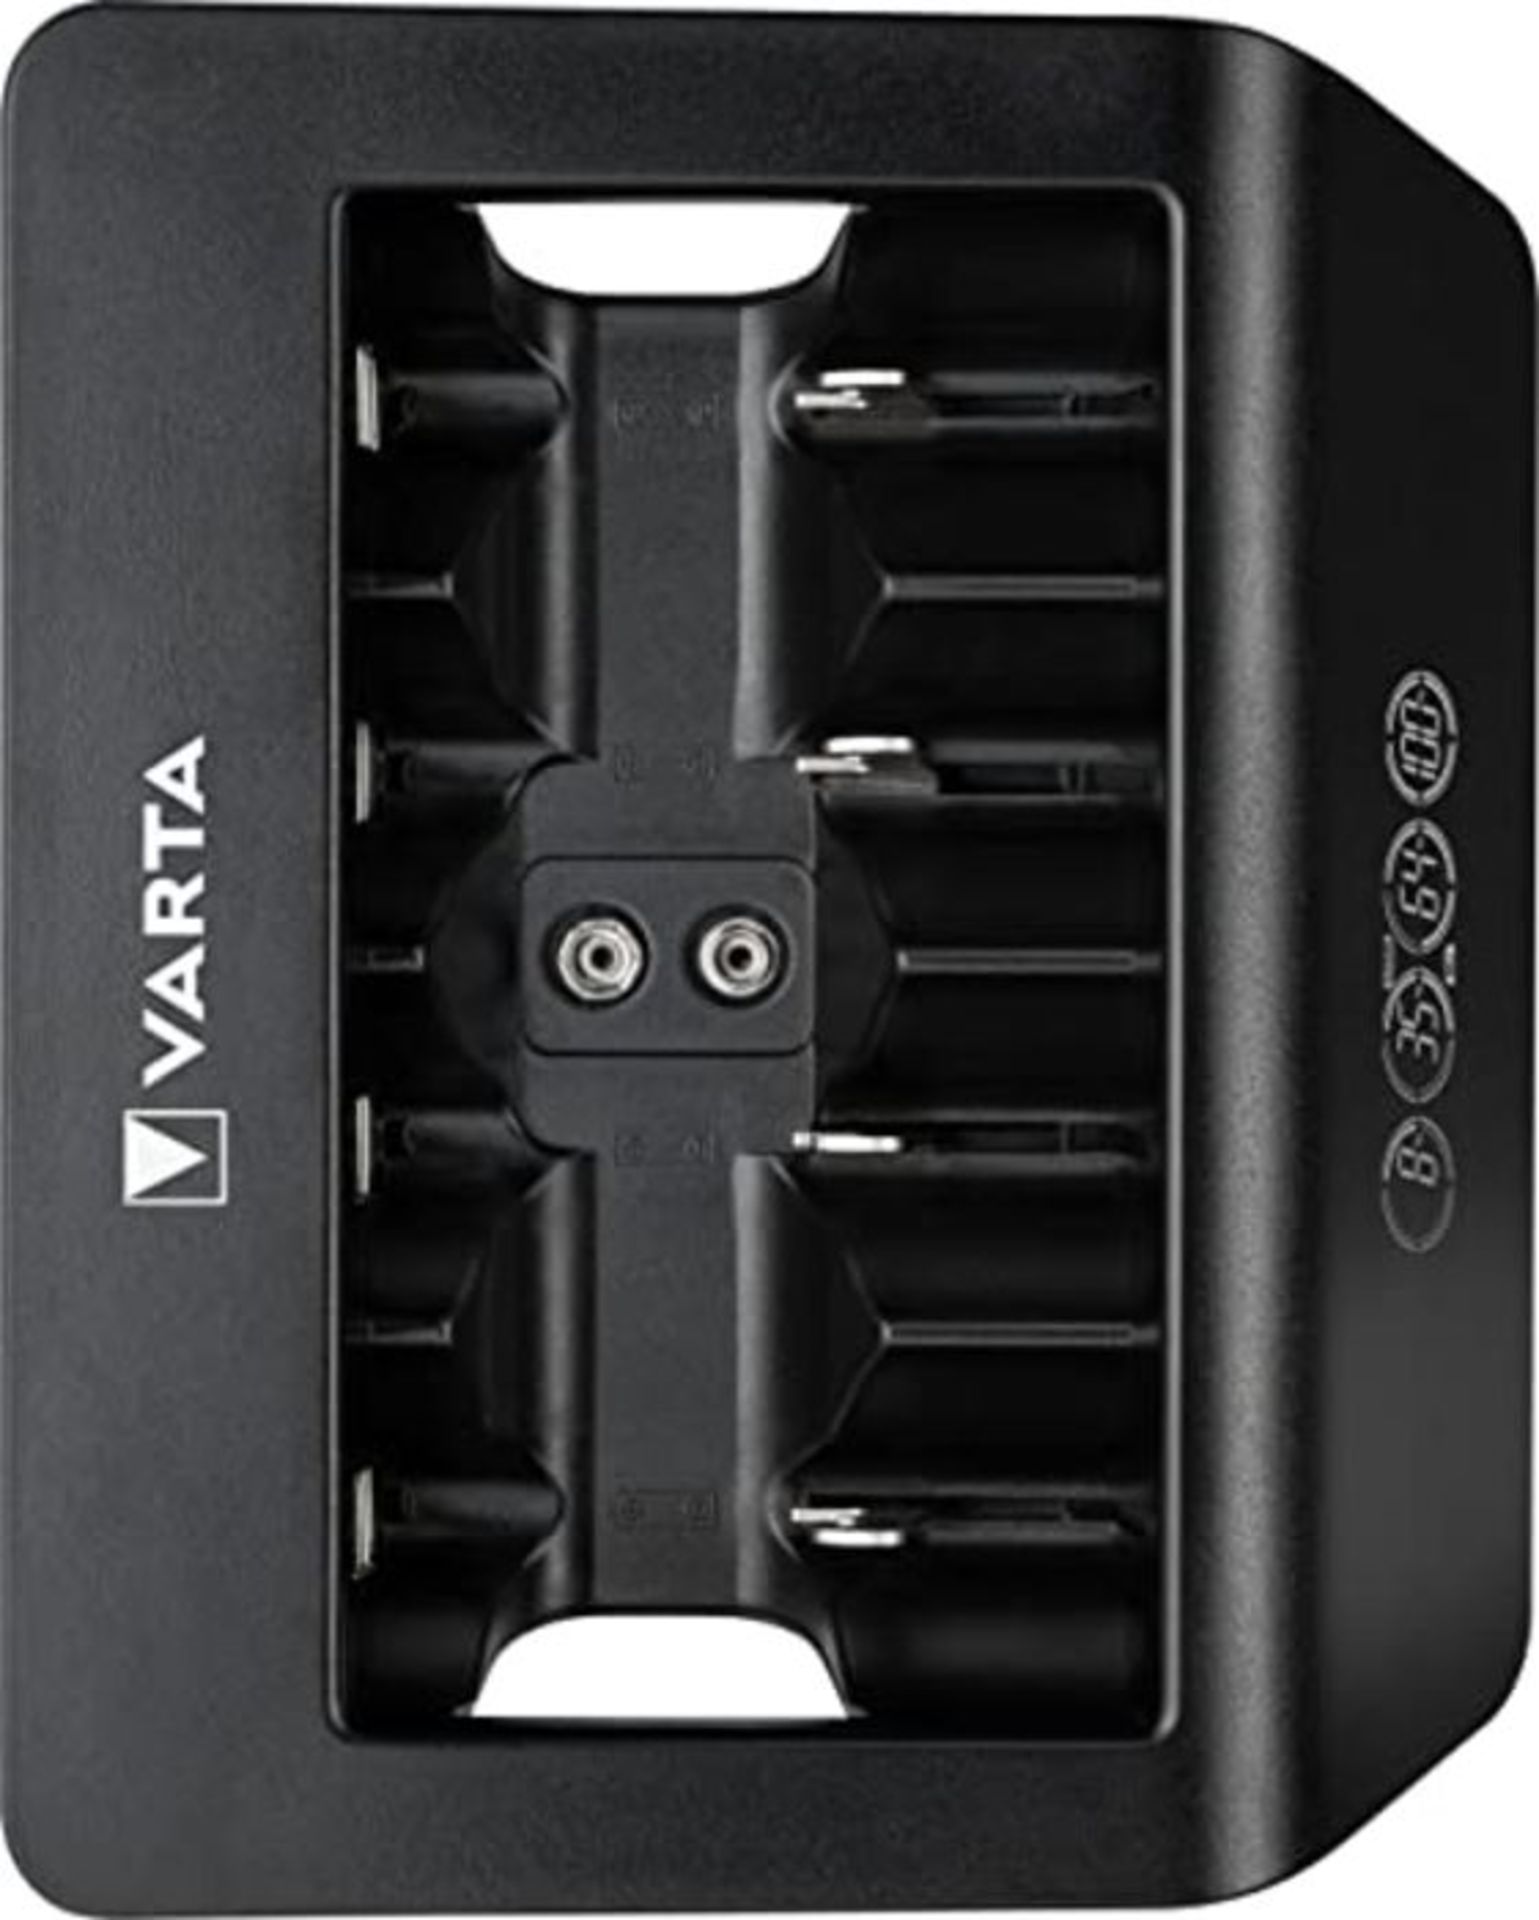 VARTA Universal Charger+, Ladegerät für Akkus in AA/AAA/9V und USB Geräte, Einzelsc